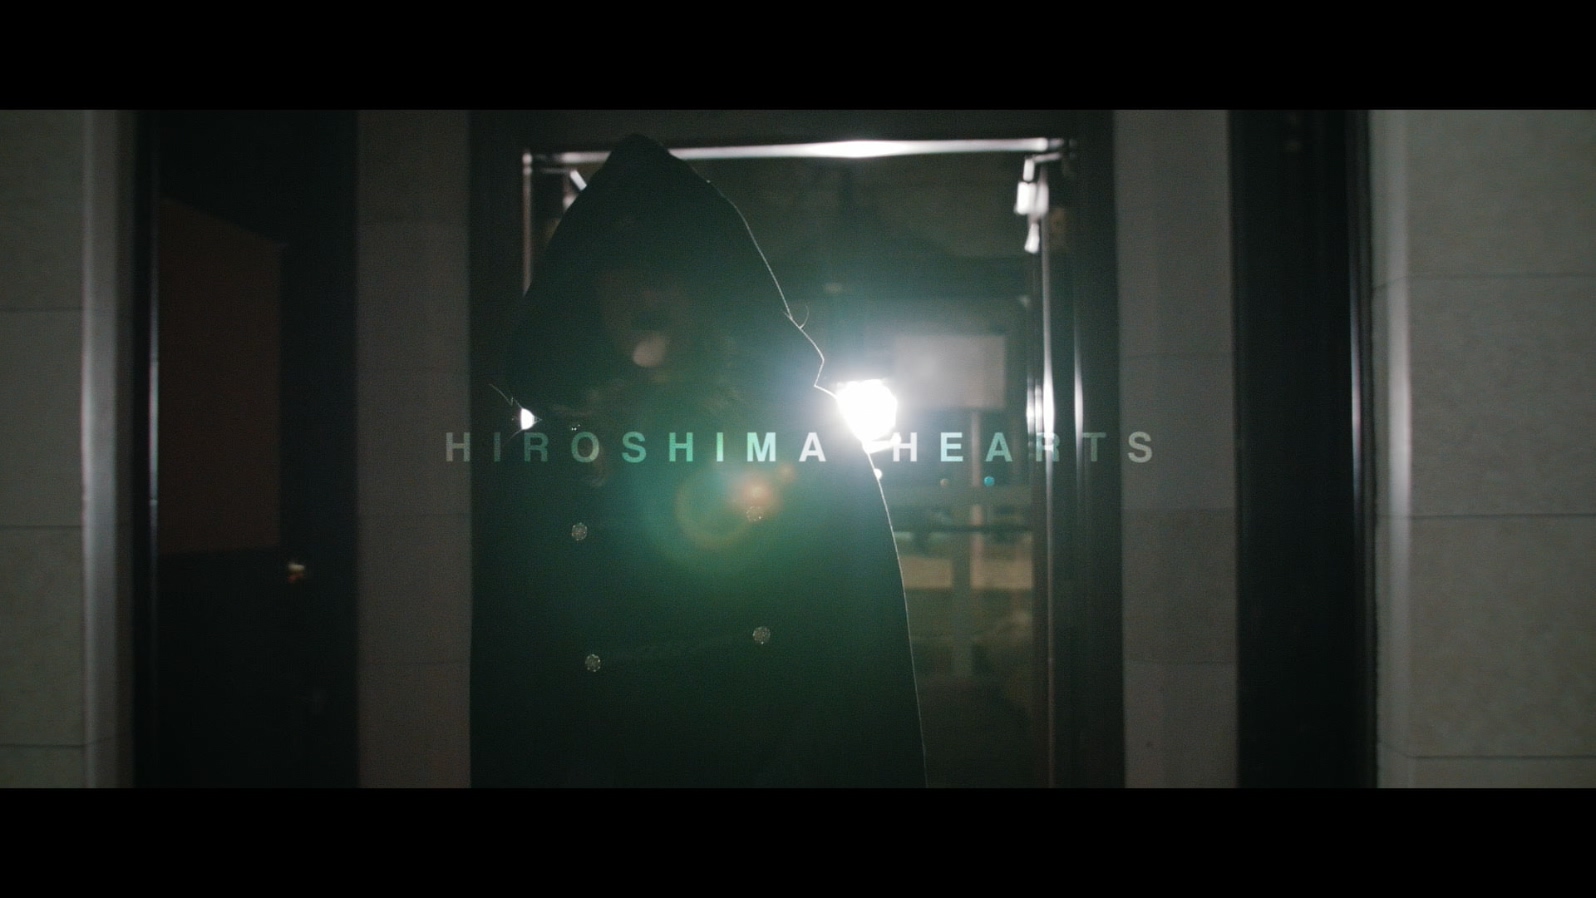 Hiroshima Hearts - Four Steps Dow